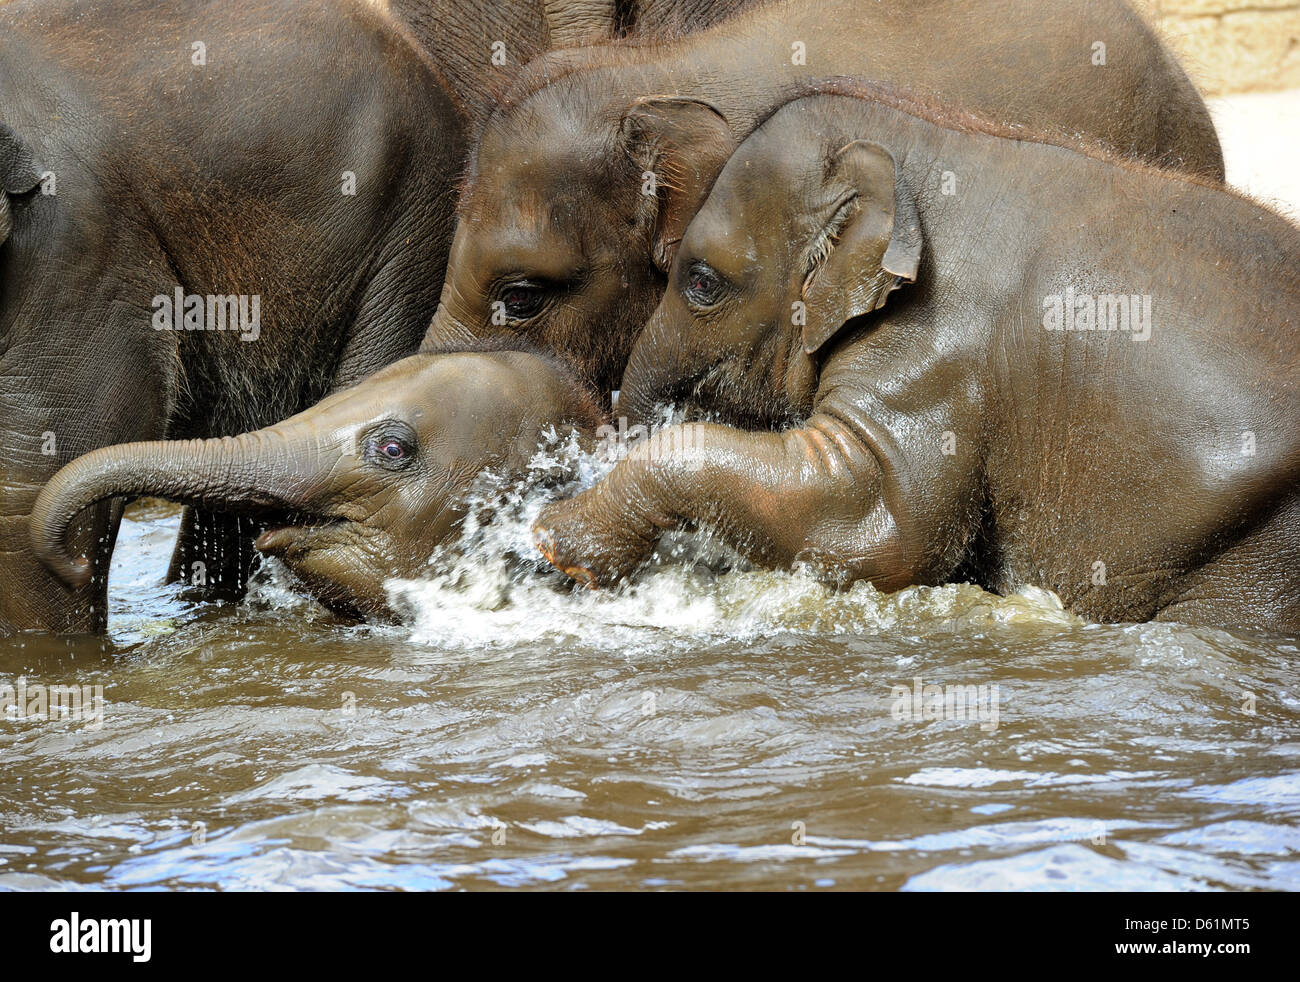 Слон купается. Животные умываются. Слоны купаются. Слоненок купается в воде. Слоник купается.